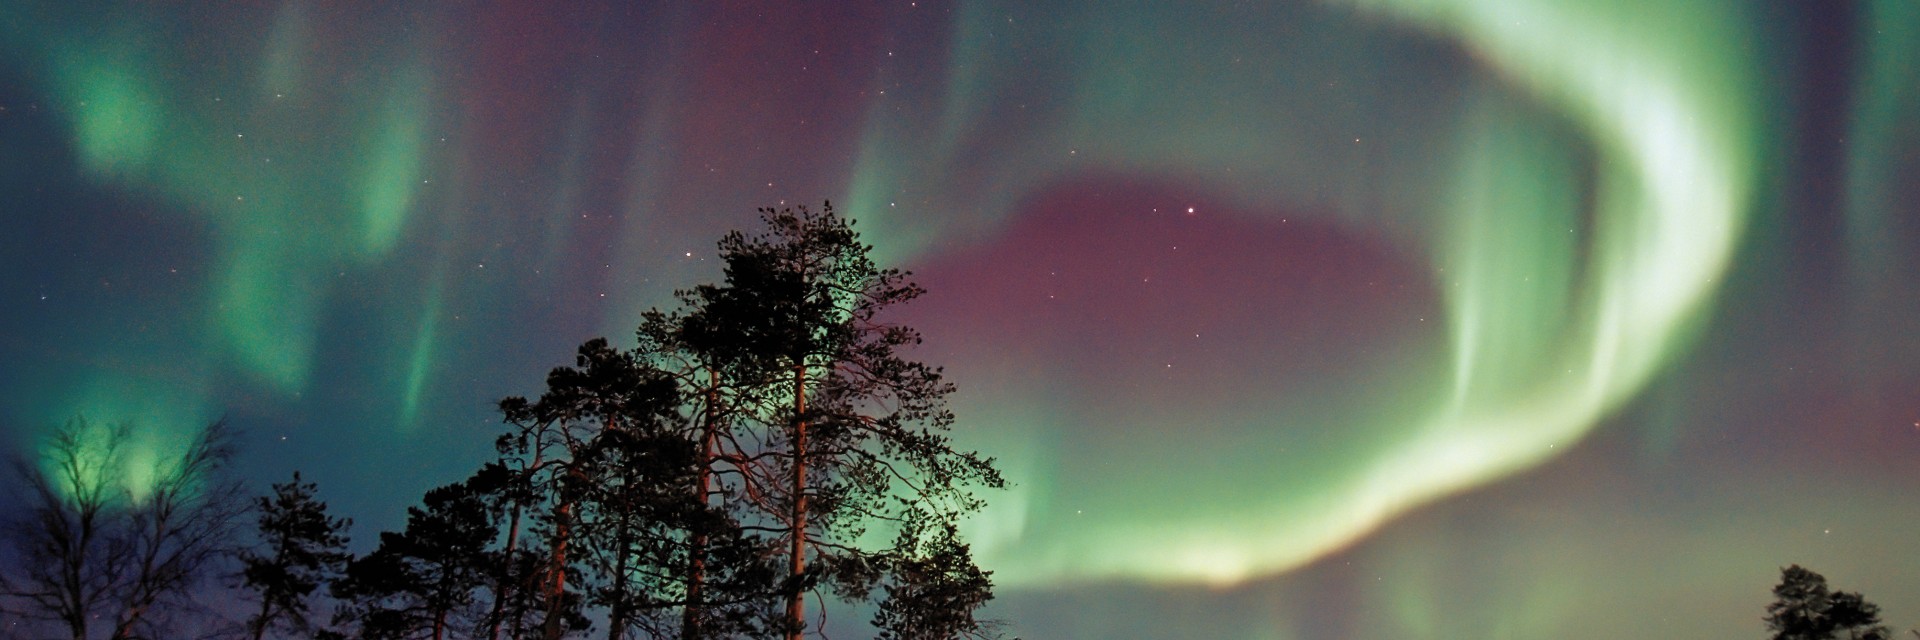 Finlandia aurora